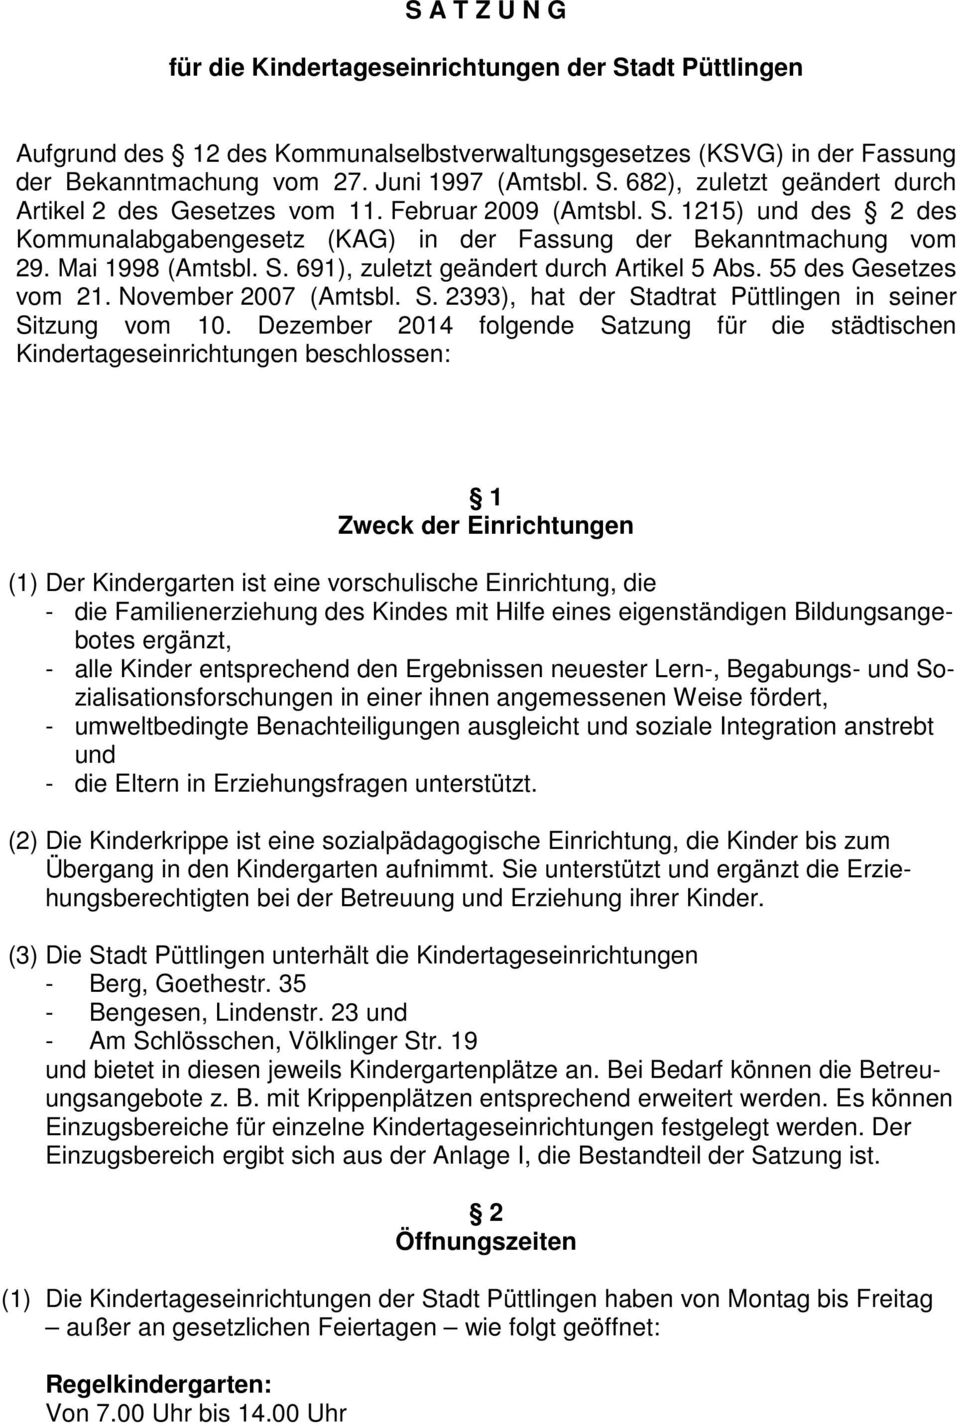 55 des Gesetzes vom 21. November 2007 (Amtsbl. S. 2393), hat der Stadtrat Püttlingen in seiner Sitzung vom 10.